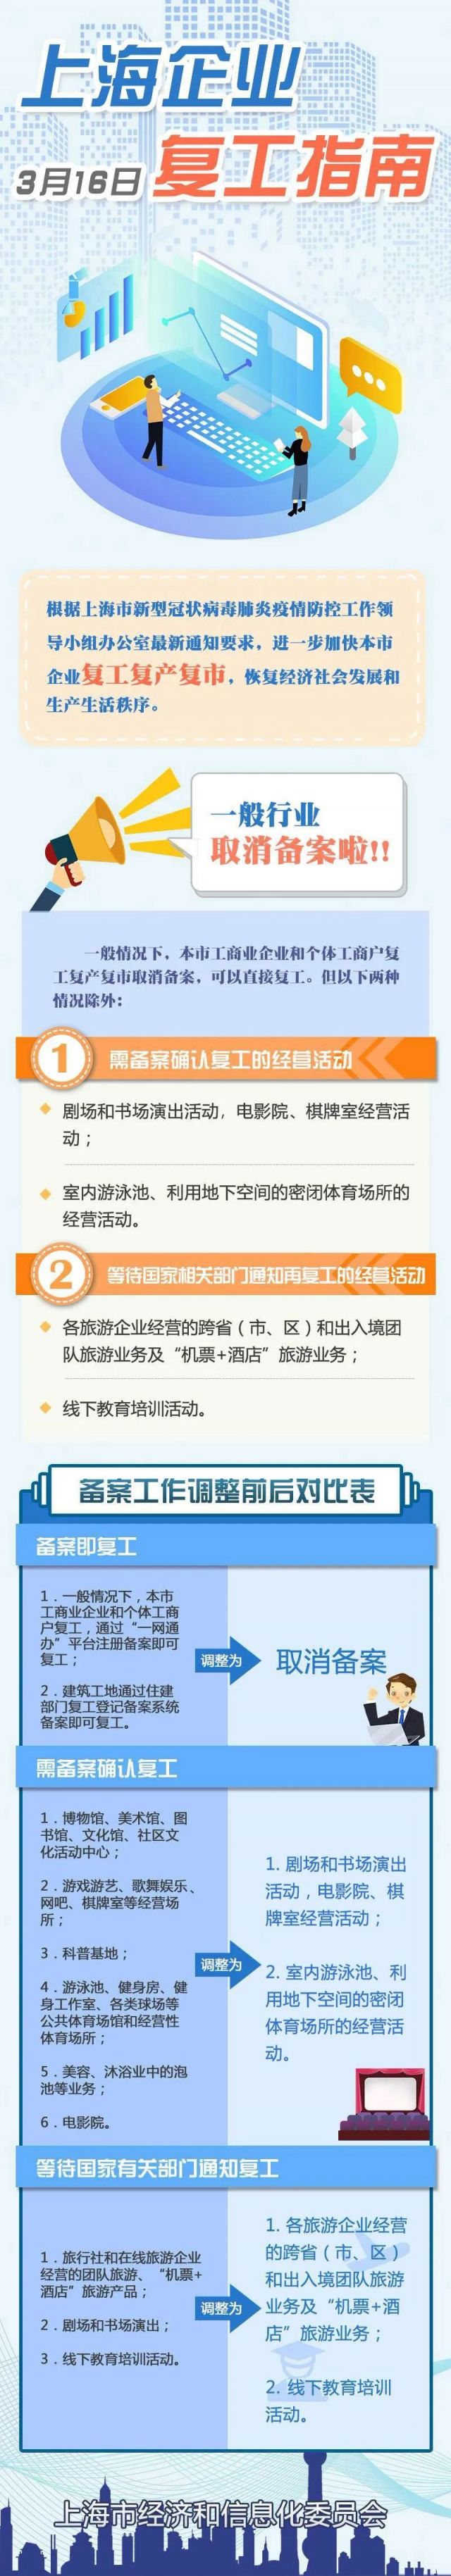 上海企业复工指南4.0版发布 一般行业取消备案直接复工